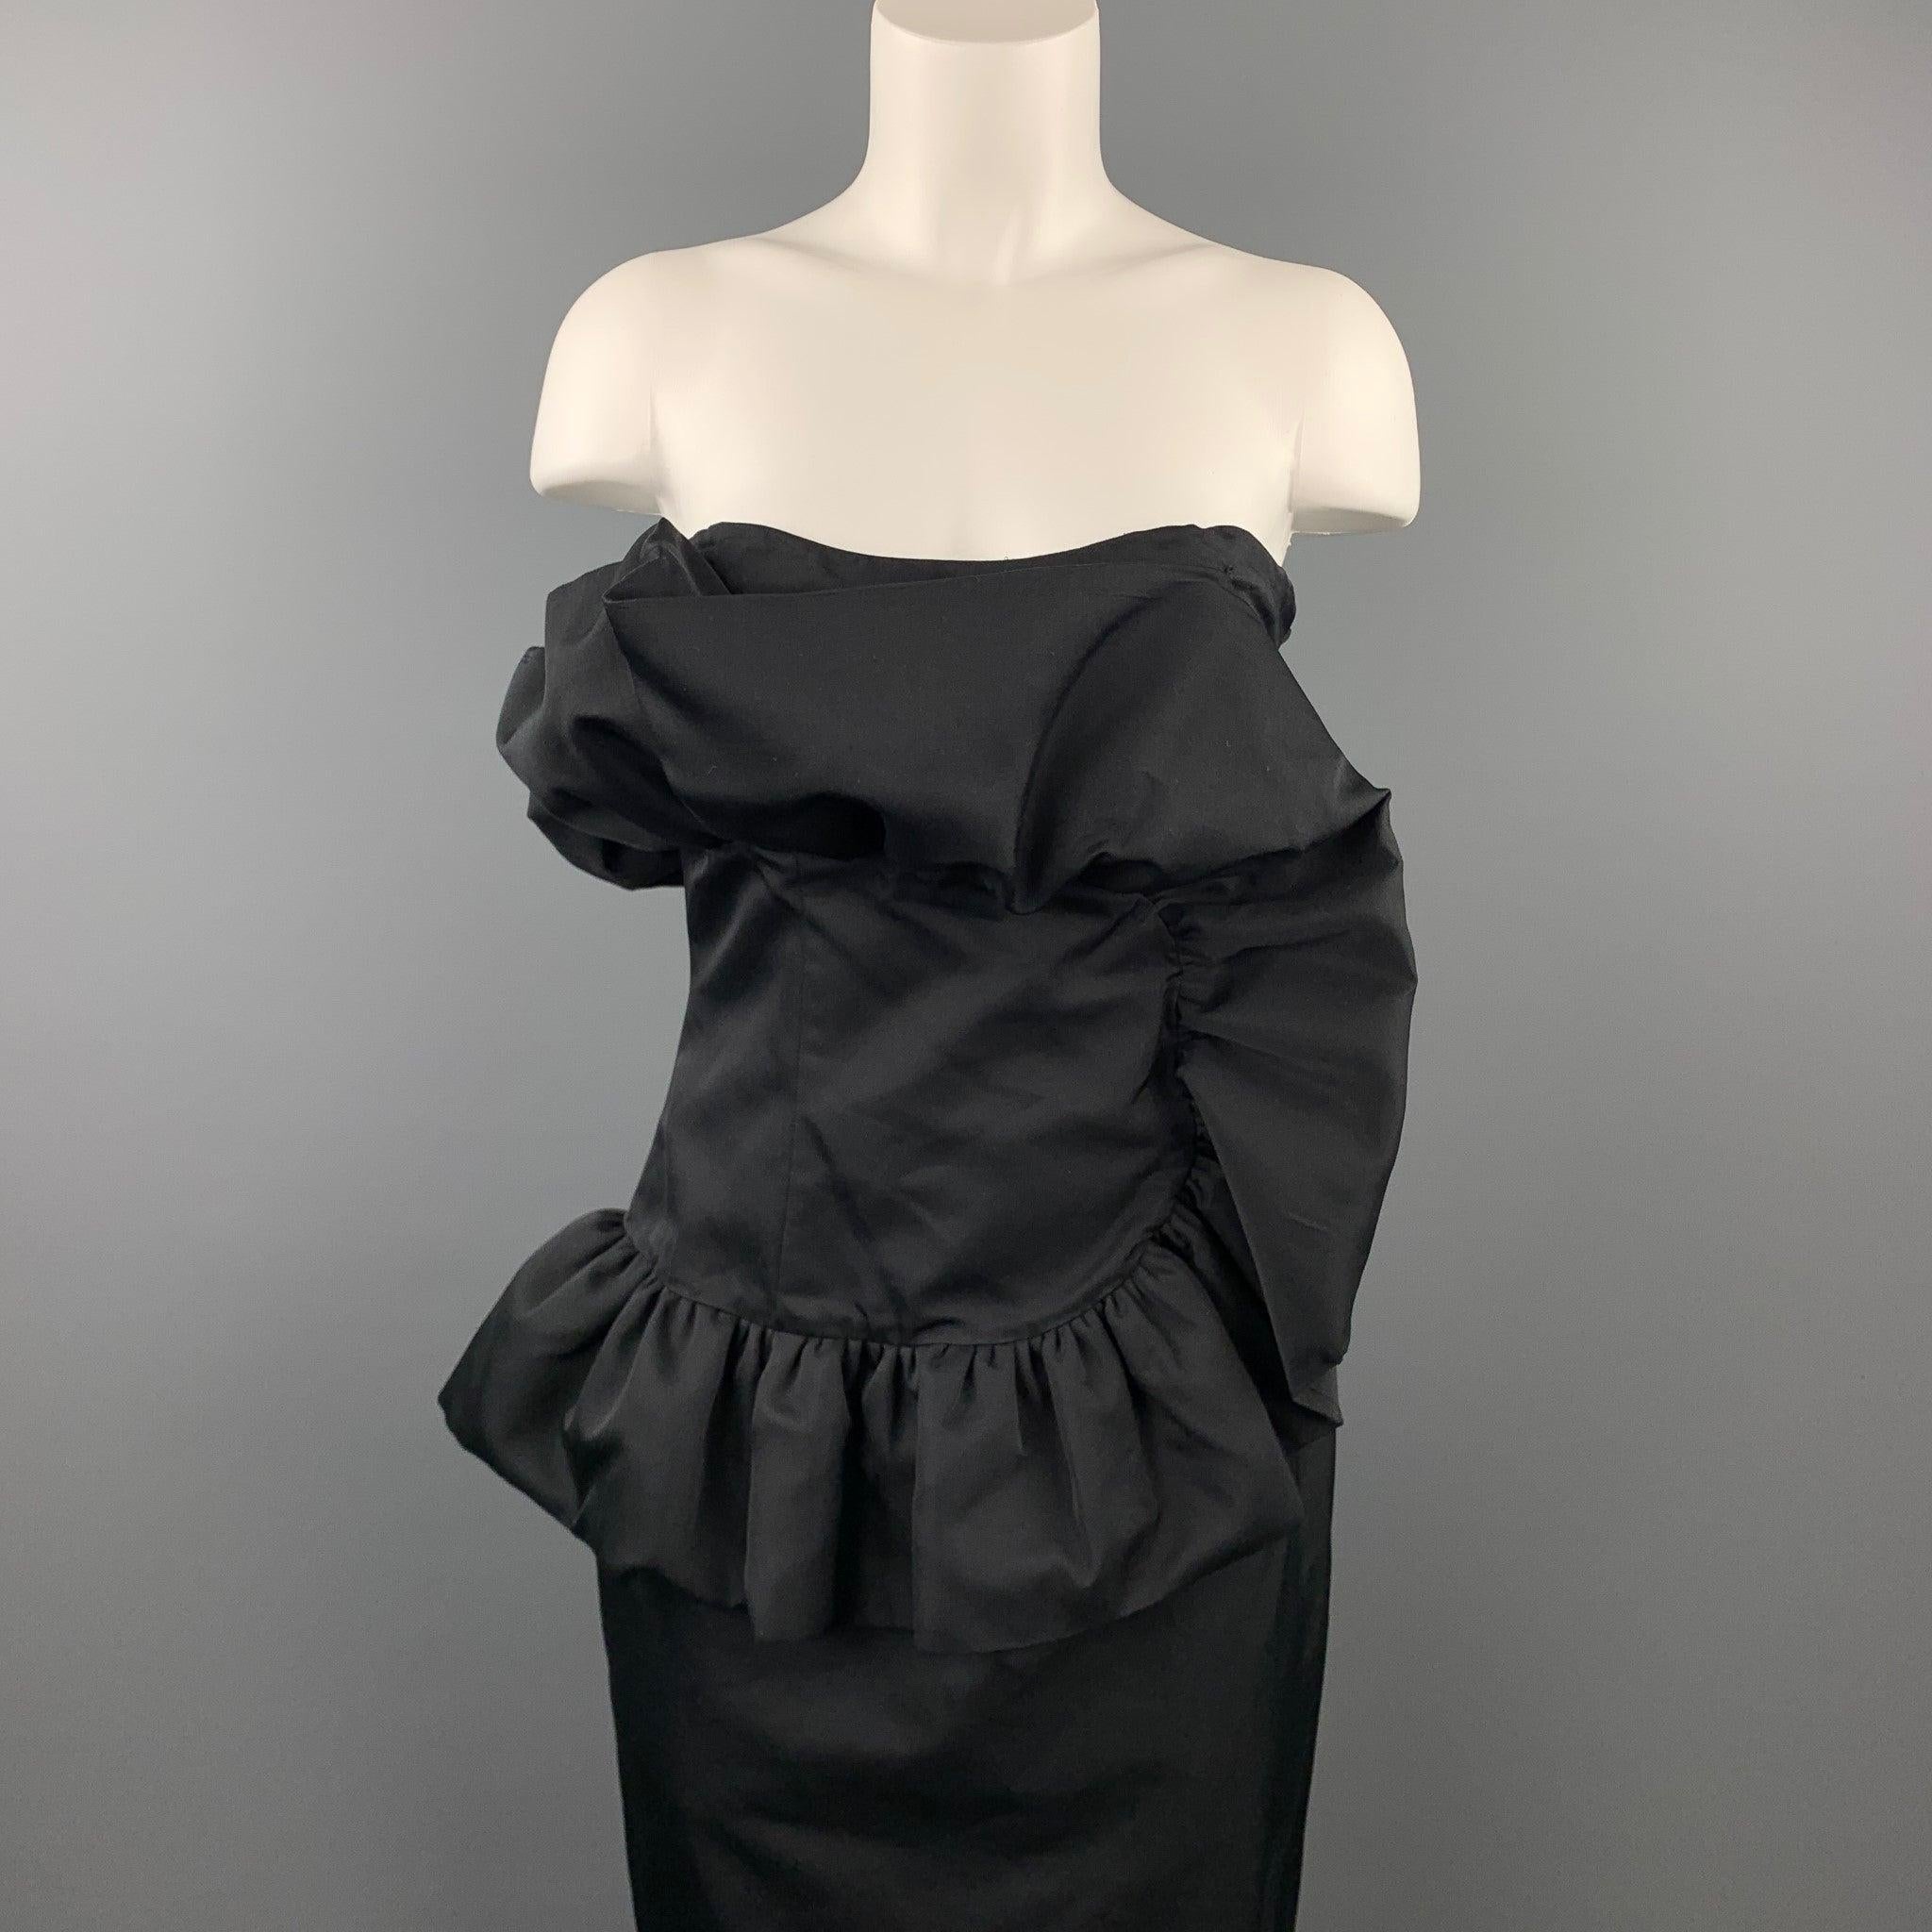 La robe bustier GIAMBATTISTA VALLI se présente dans un coton/soie noir avec un motif à volants, un corset intérieur et une fermeture à glissière sur le côté. Tel quel. Fabriqué en Italie.
Etat d'occasion. 

Marqué :   44/M 

Mesures : 
  Poitrine :